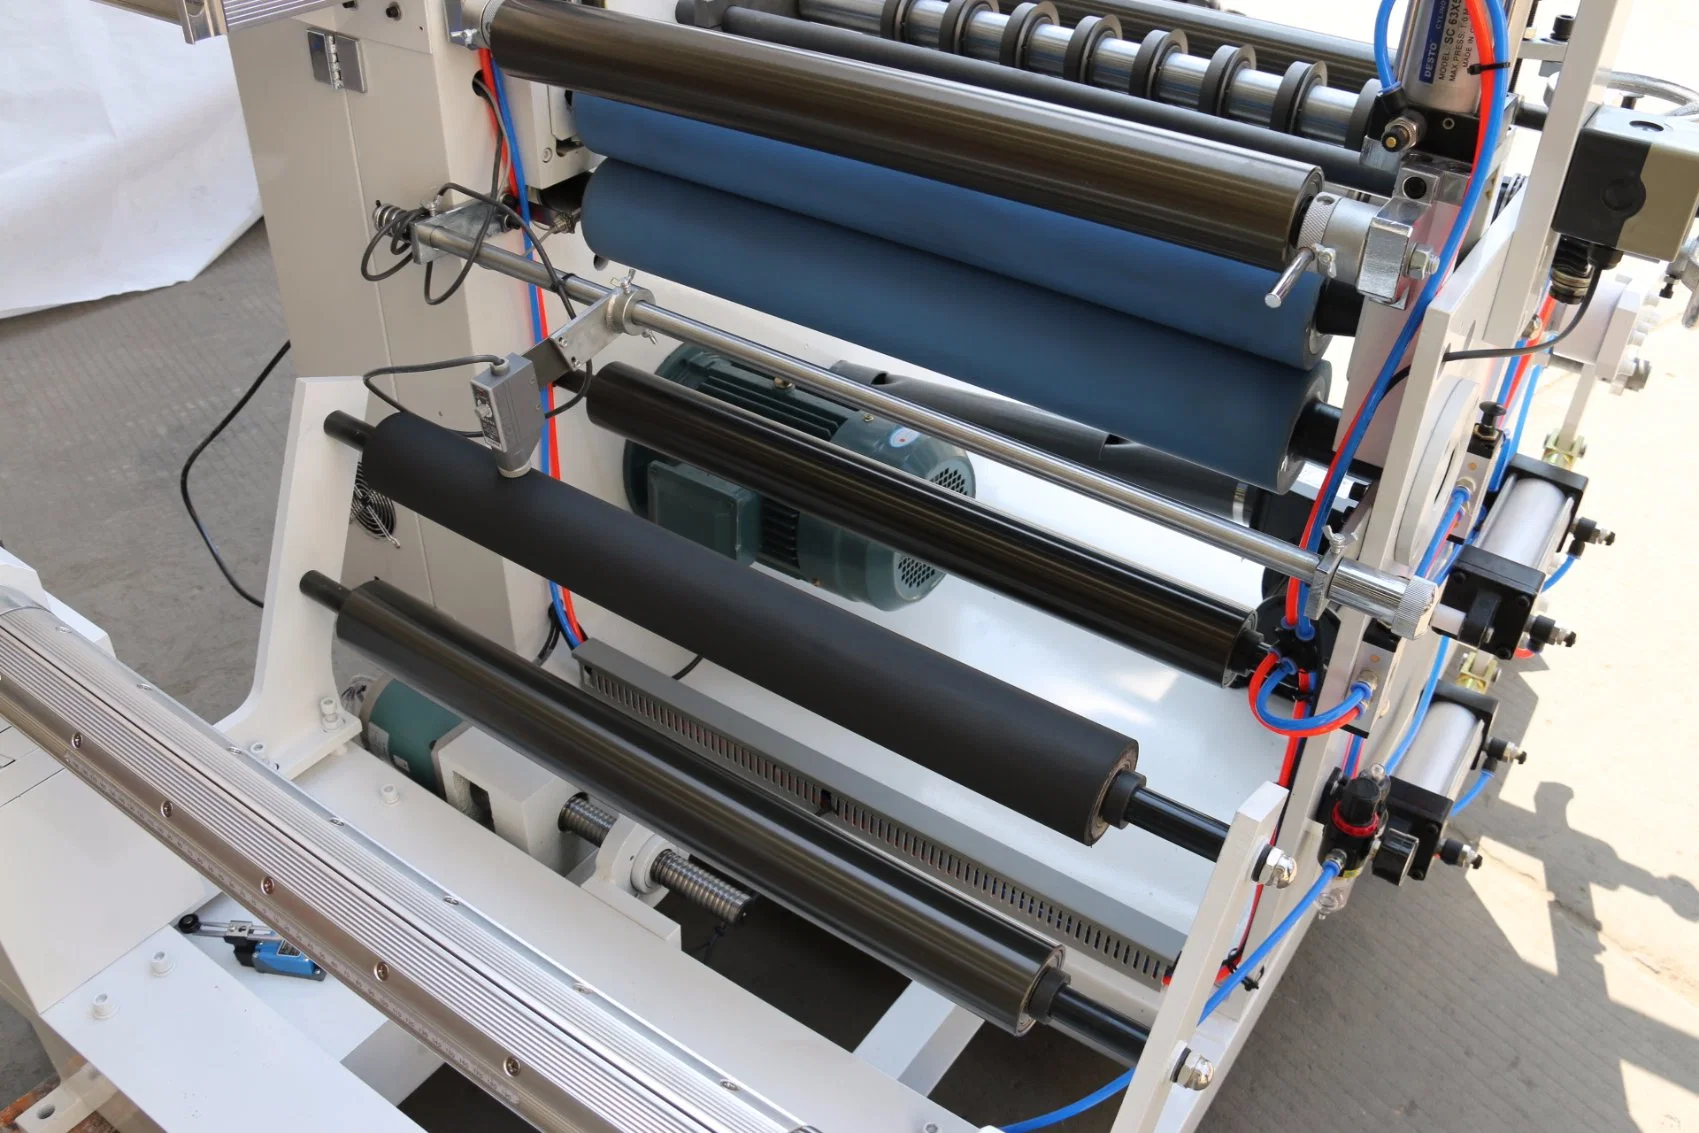 ماكينة لطي الورق المحكم الآلي بPLC الصناعية